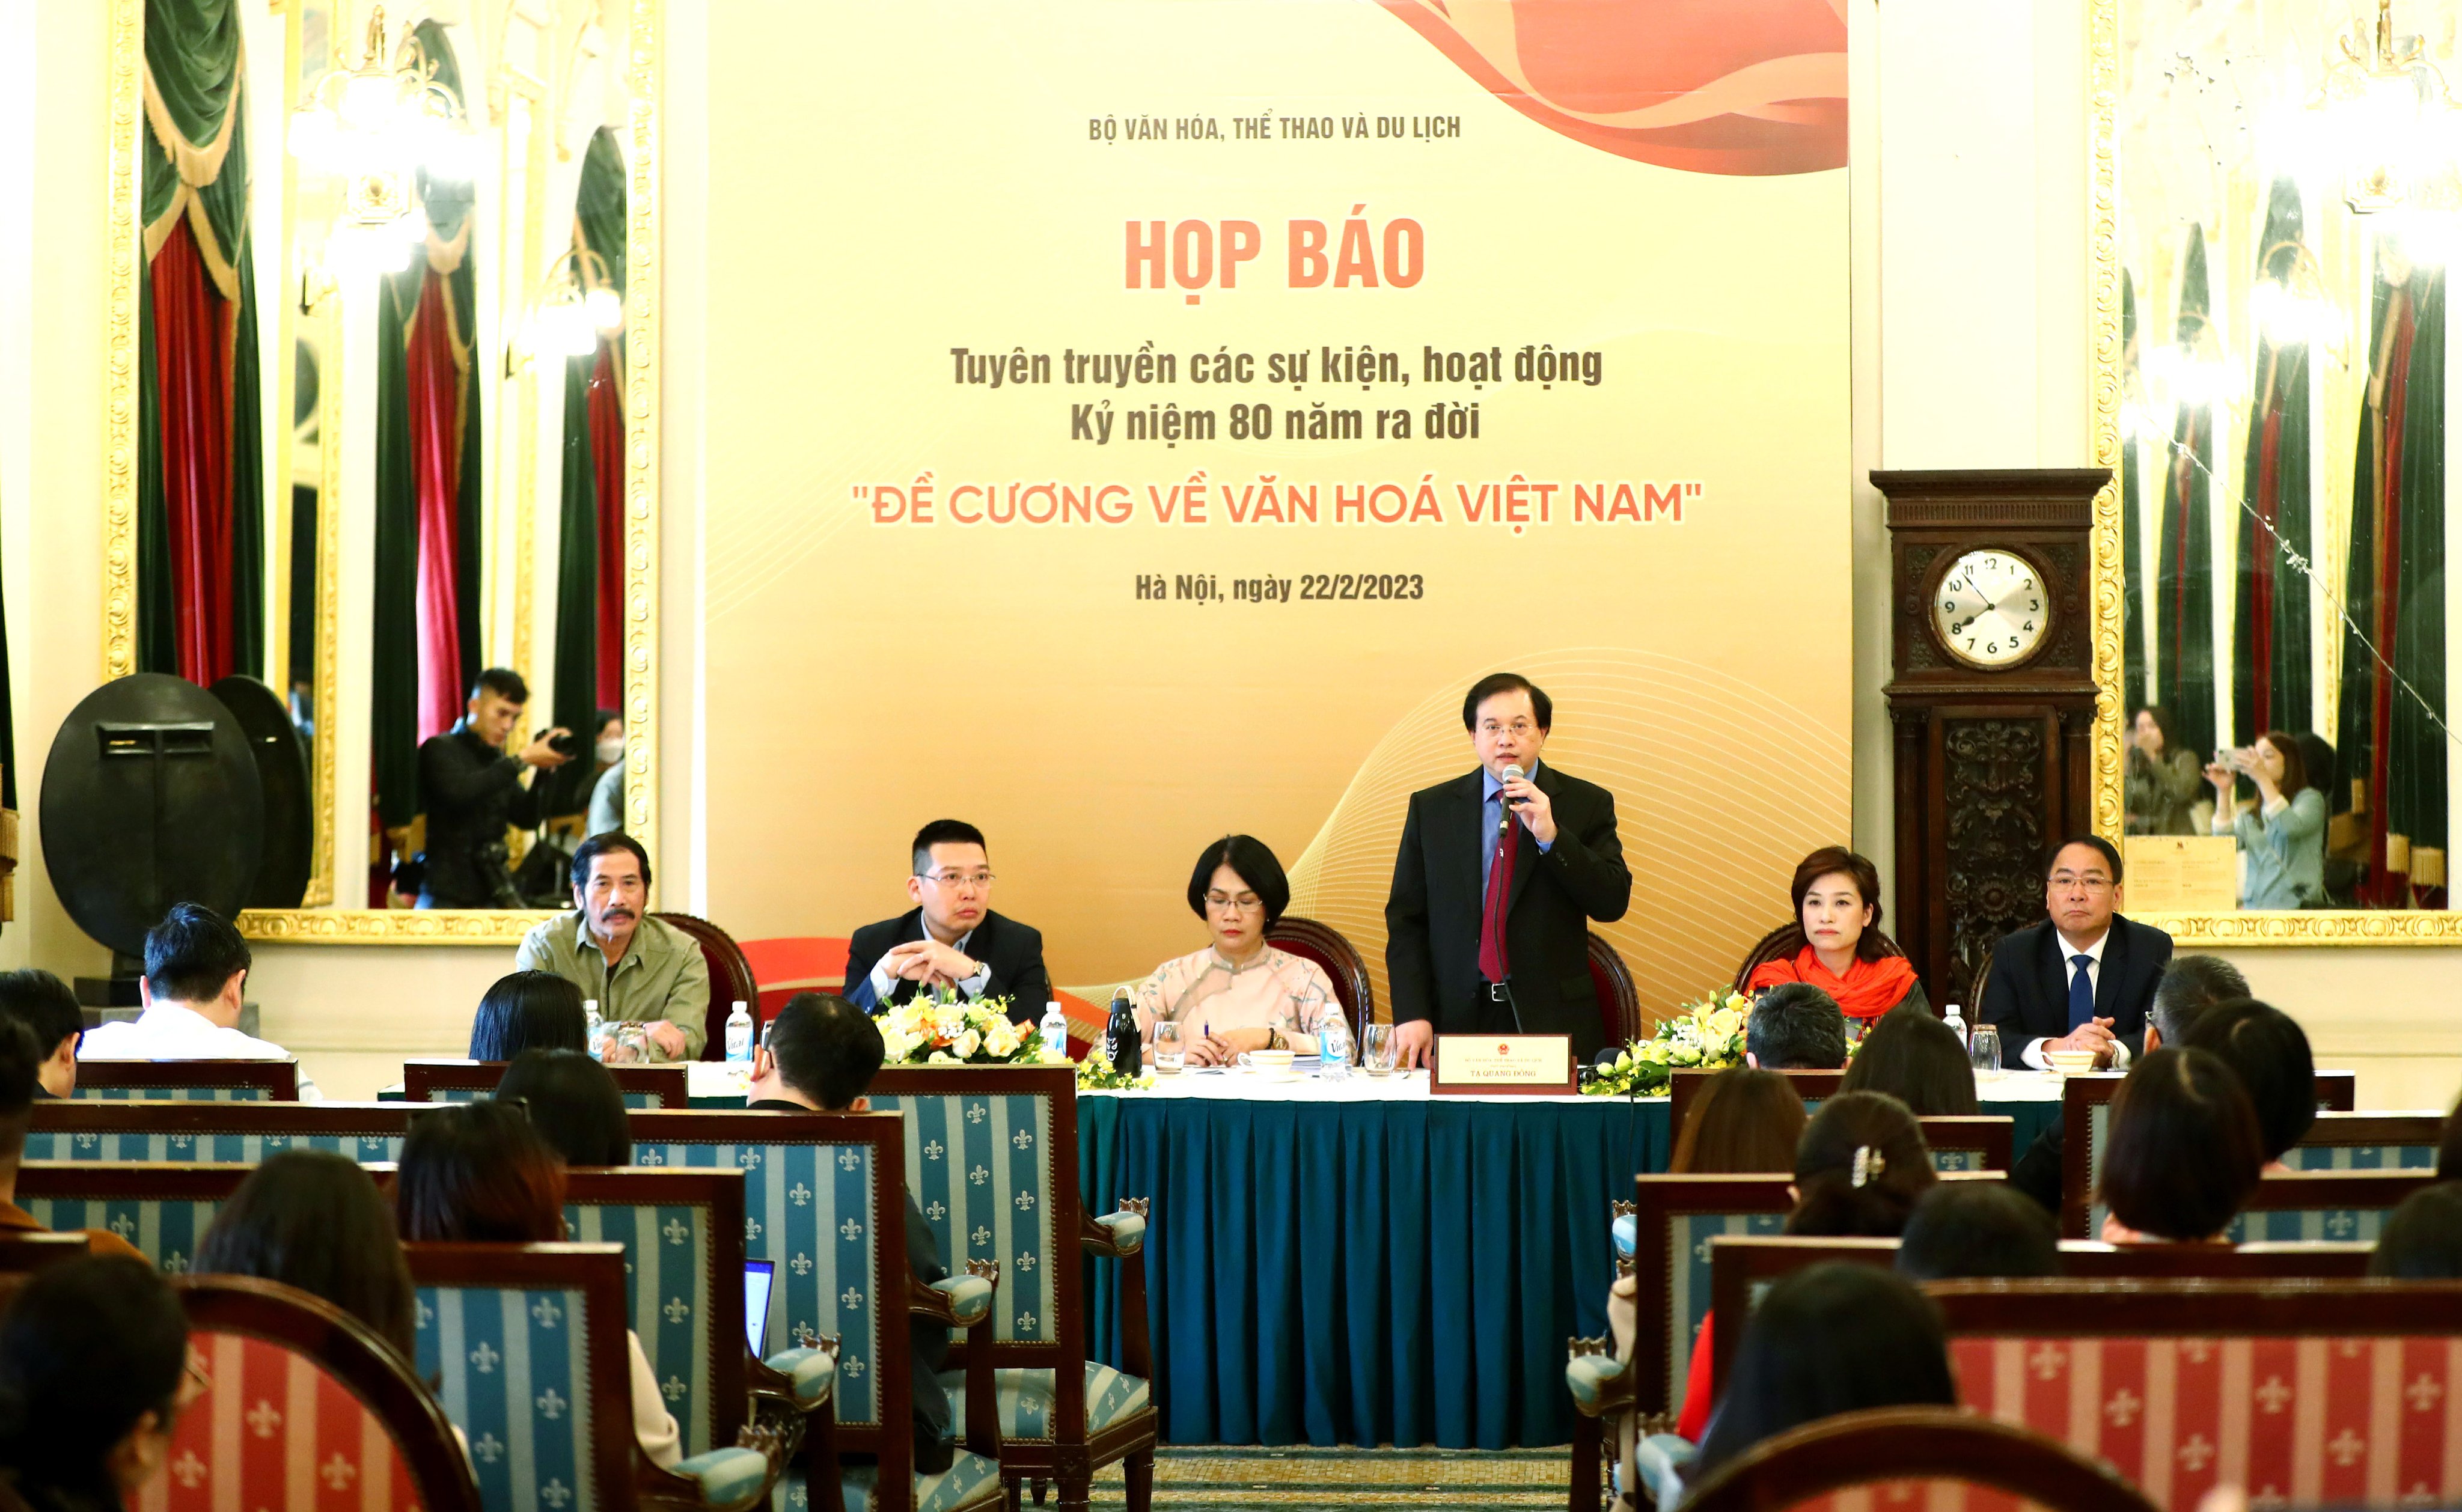 Khẳng định những giá trị lâu bền của Đề cương về văn hóa Việt Nam qua nhiều hoạt động ý nghĩa - 2